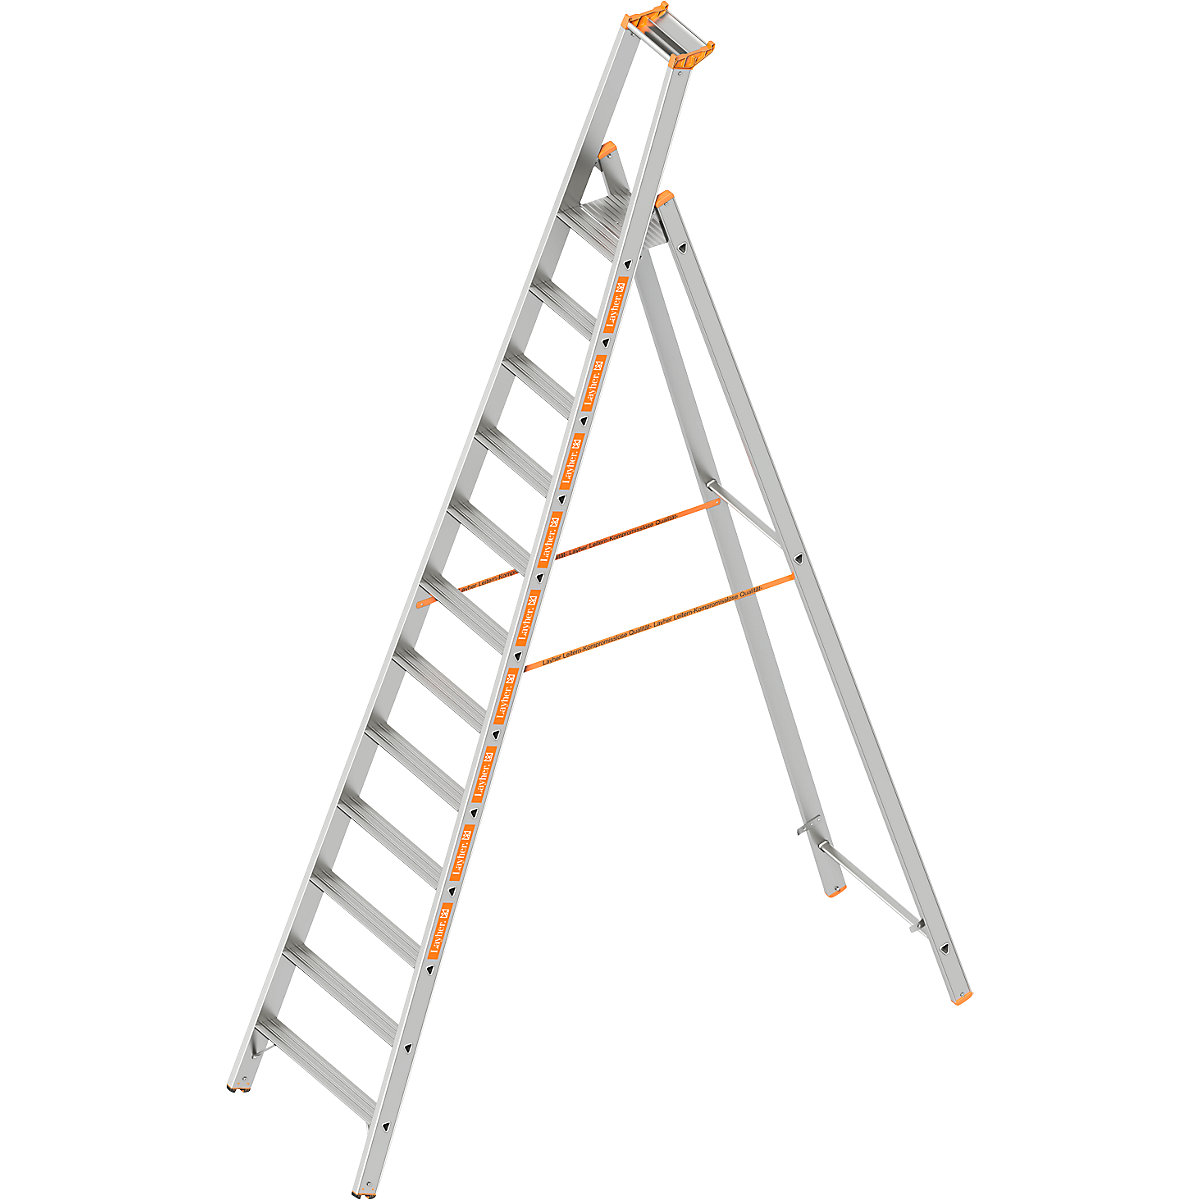 Layher – Lépcsőfokos állólétra, egyoldalas kivitel, 12 lépcsőfok dobogóval együtt